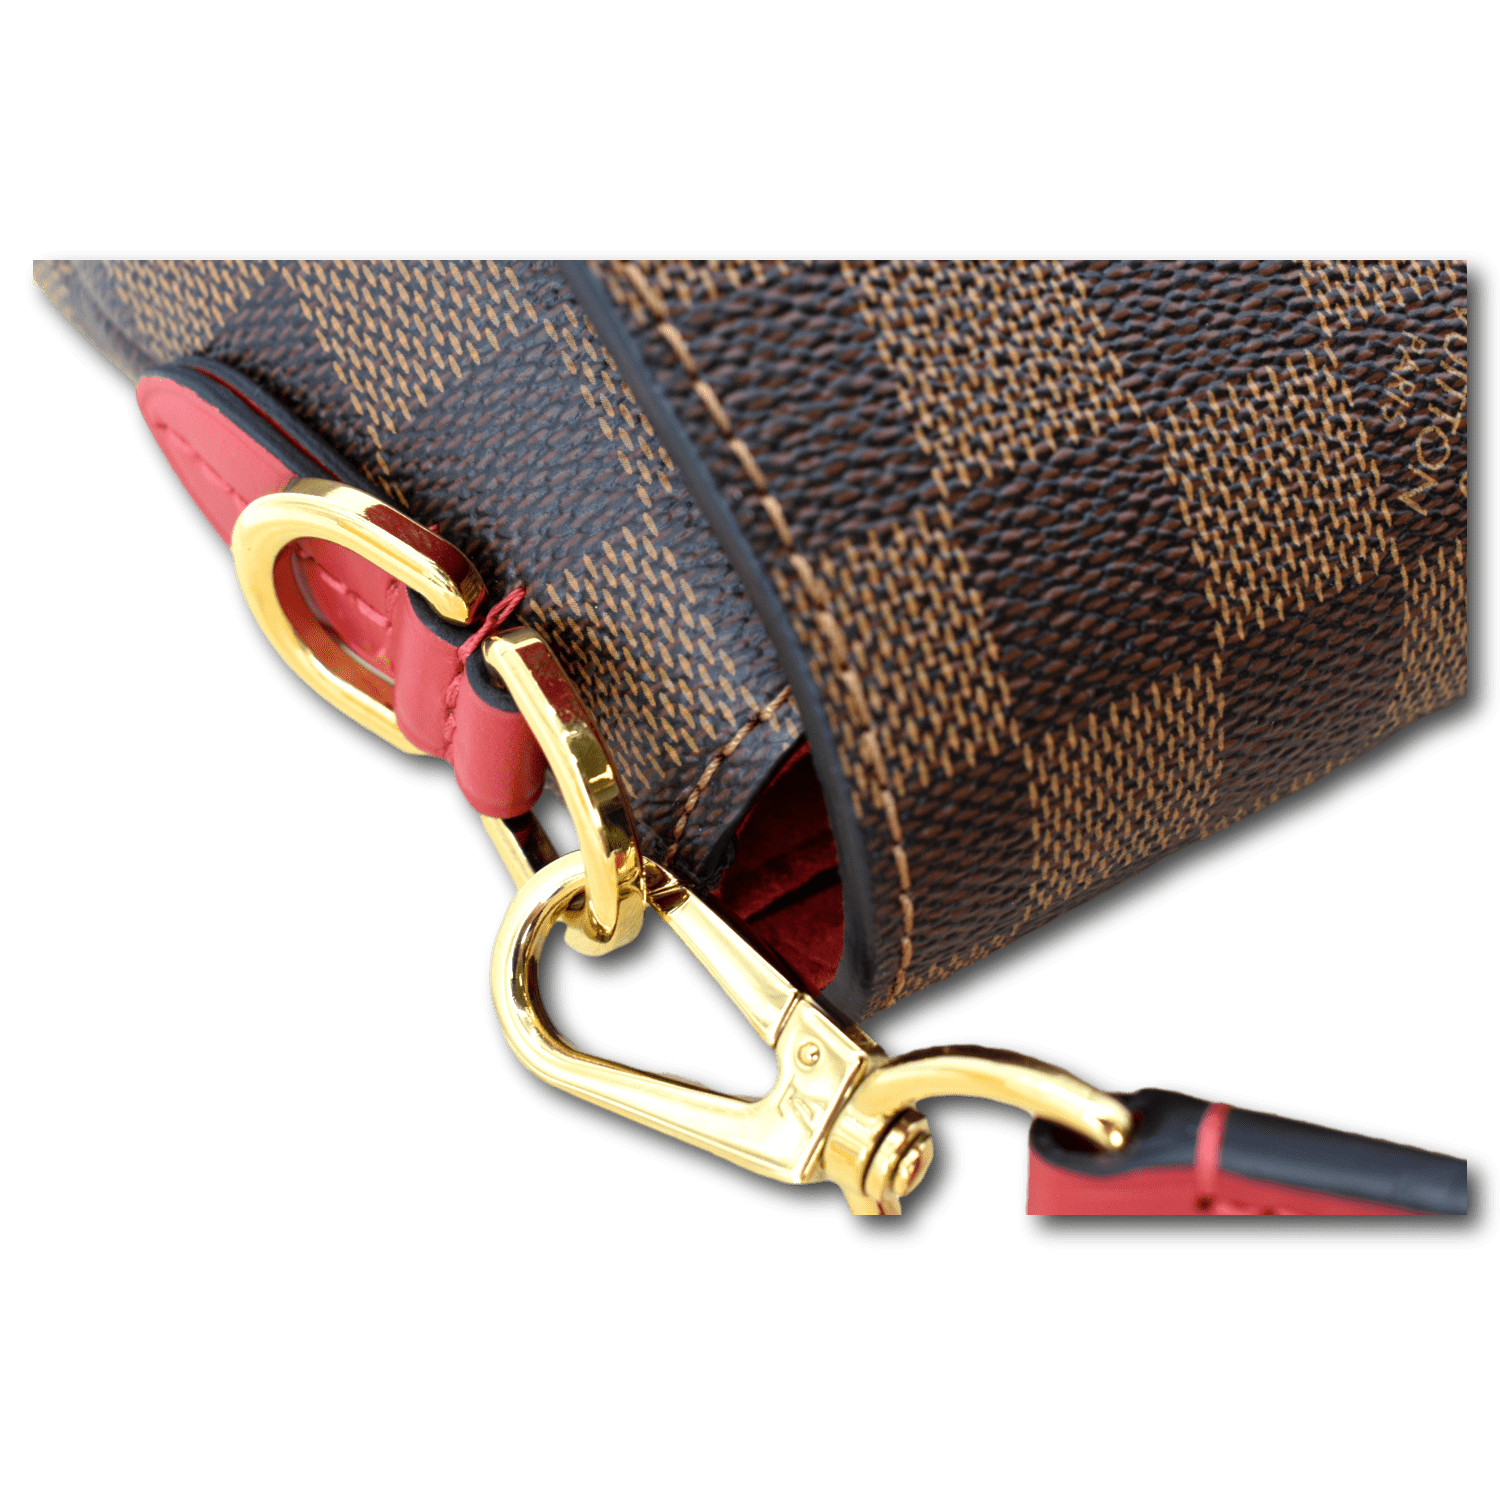 Louis Vuitton Beaubourg MM - ShopStyle Shoulder Bags